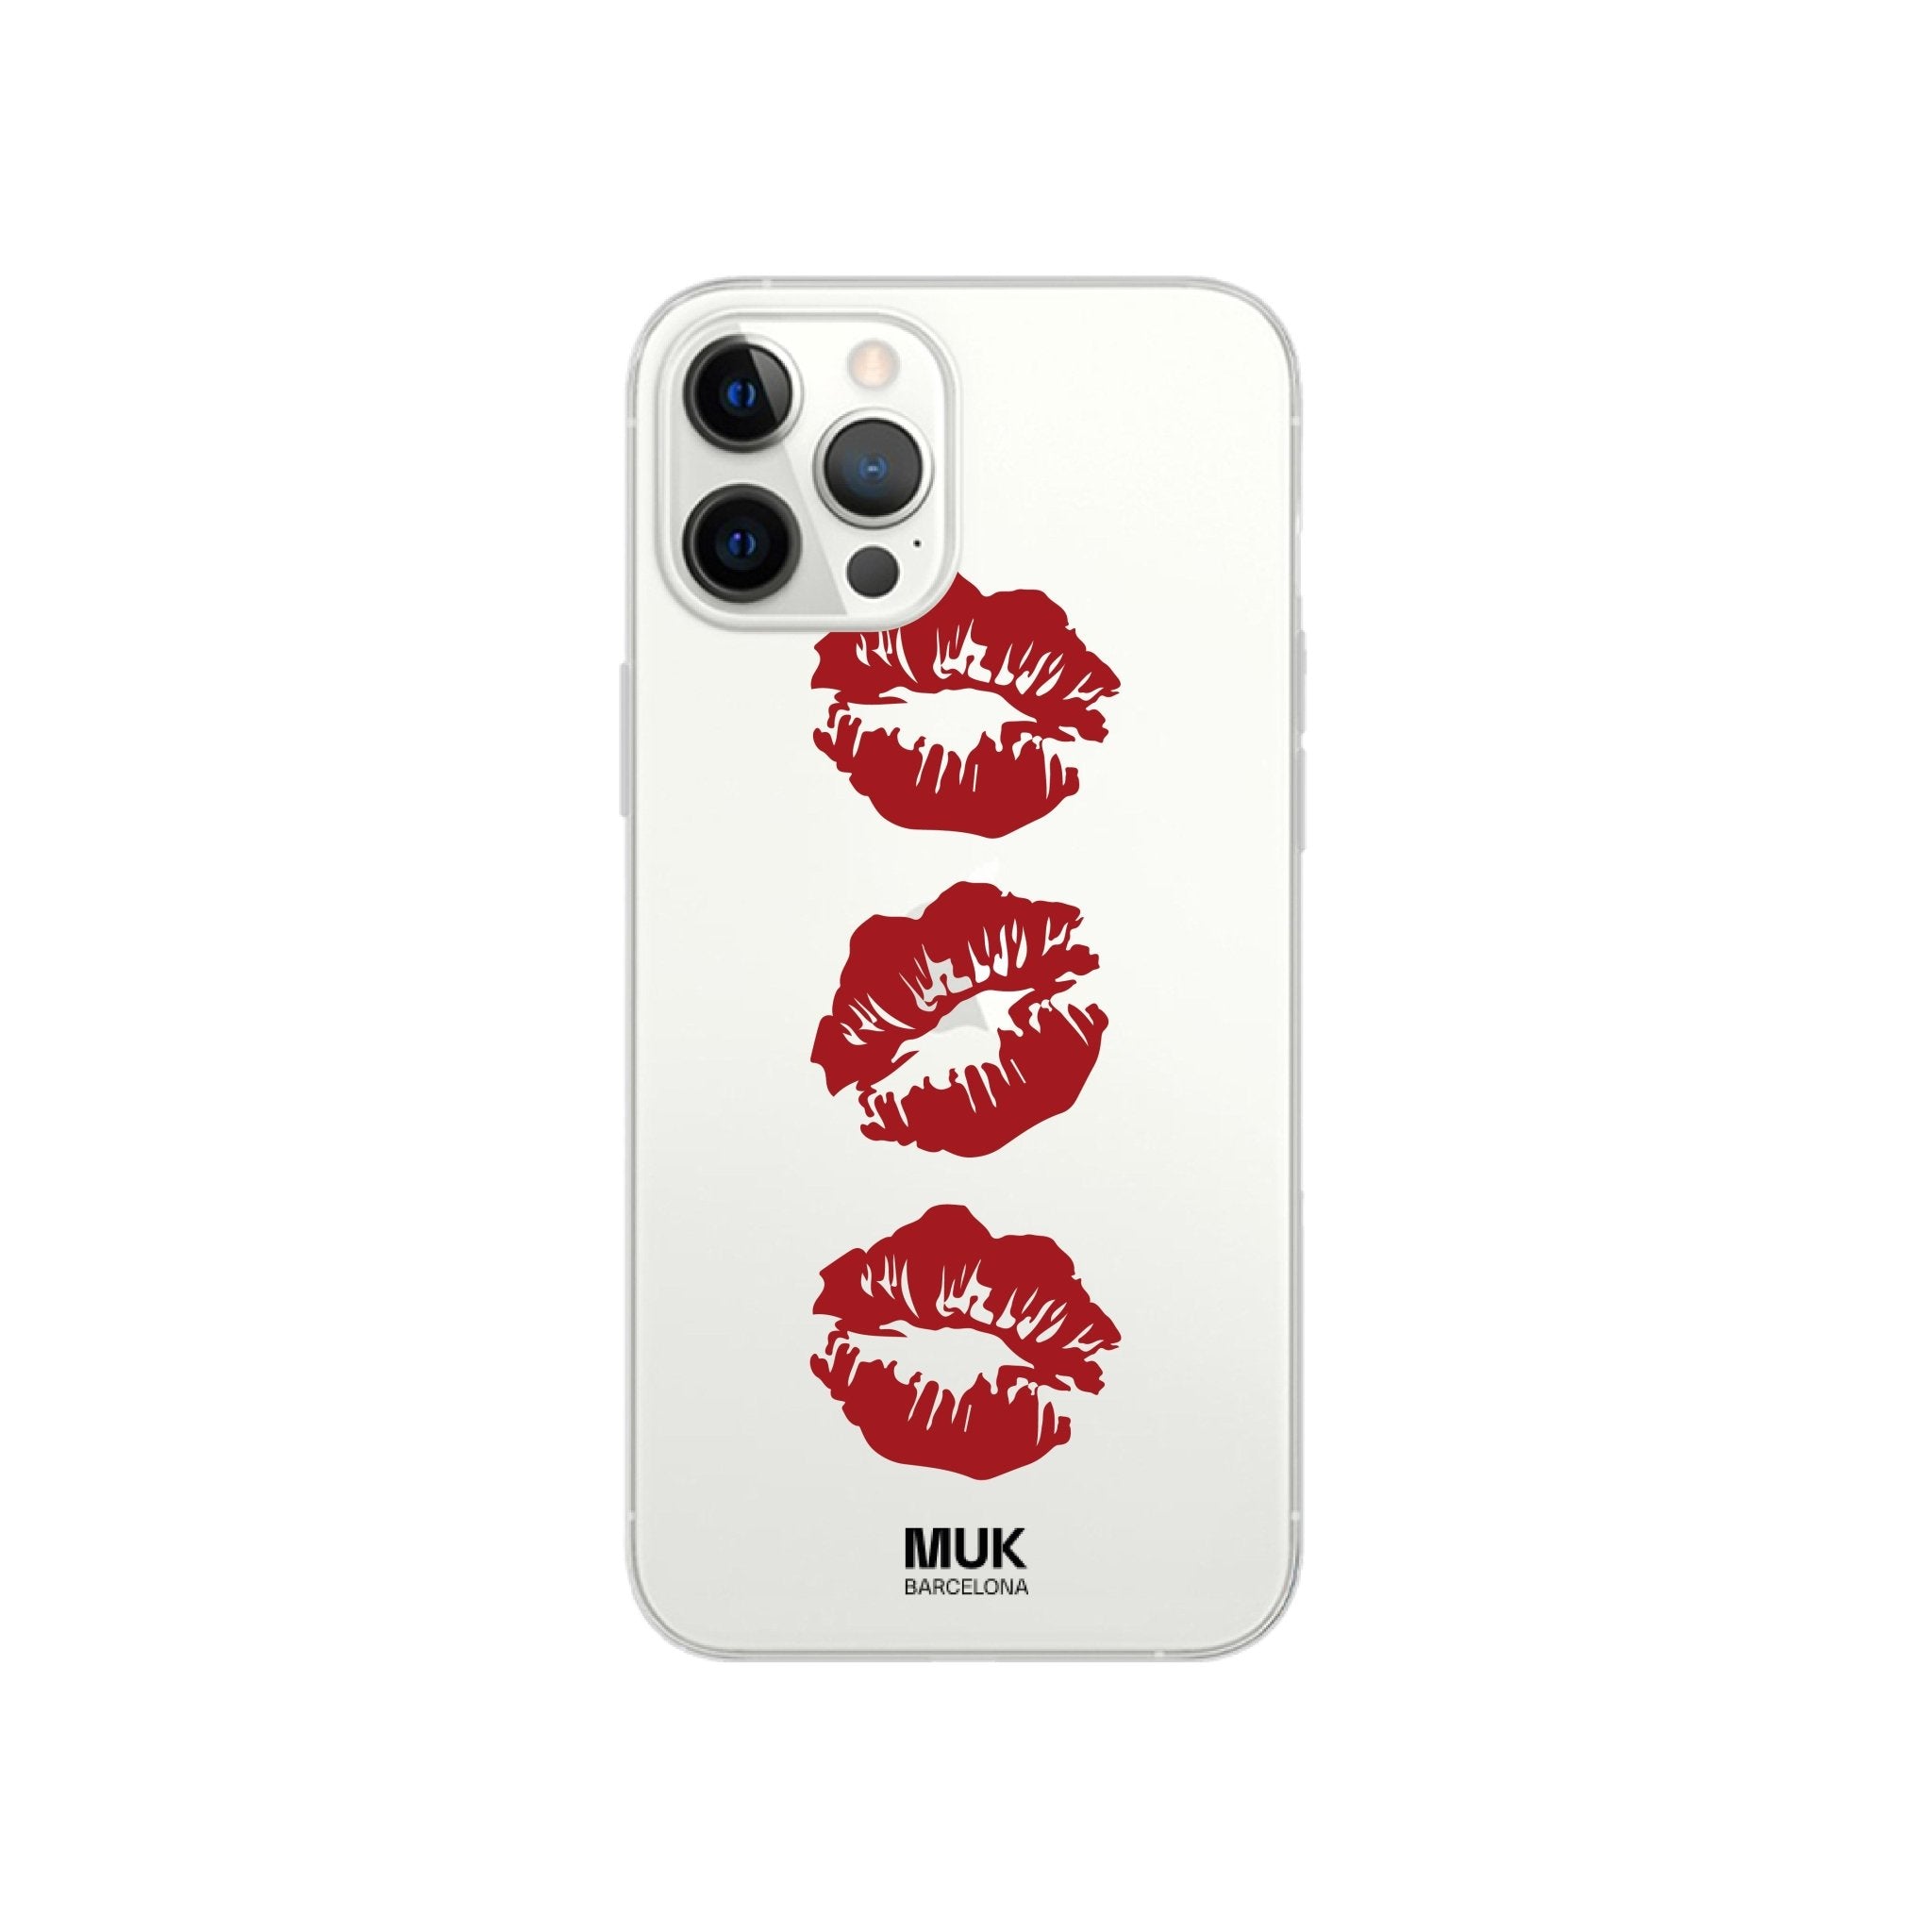 Funda de móvil transparente de stikcers kisses
